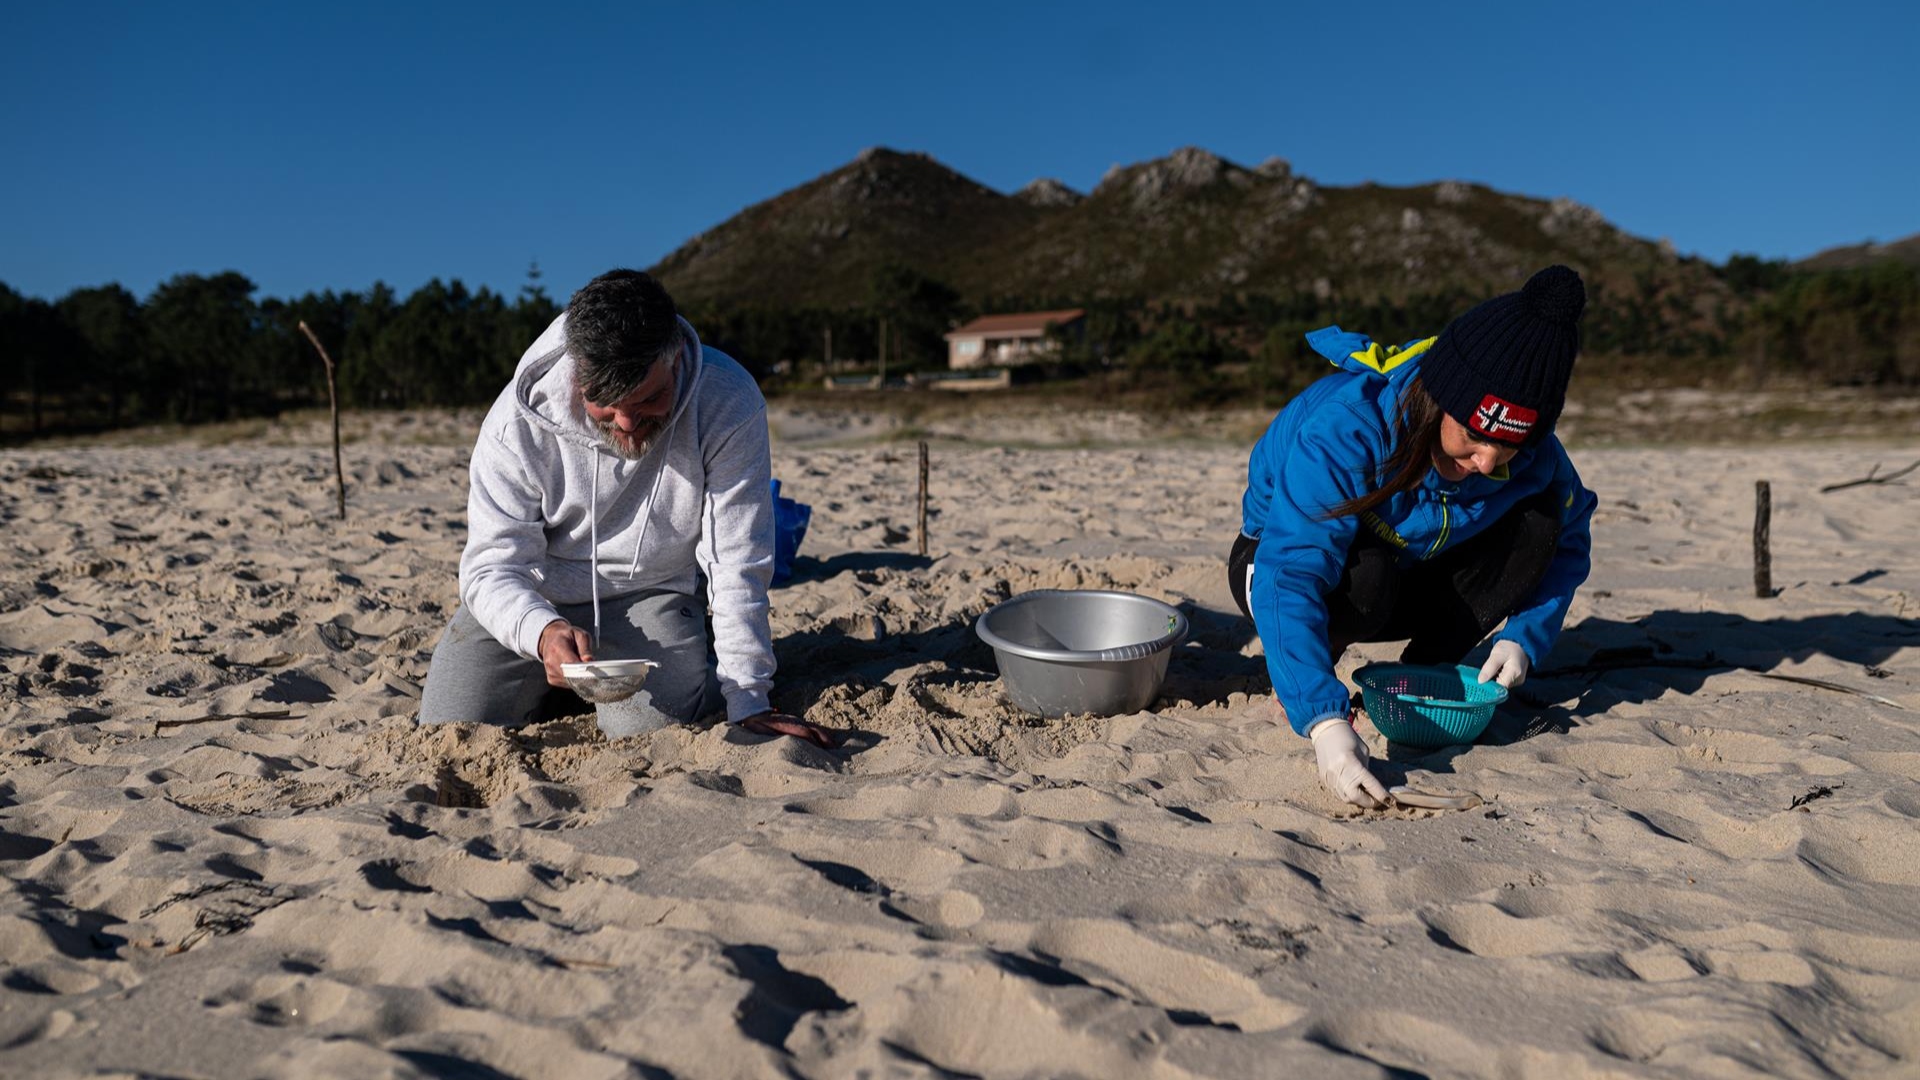 Voluntarios participan en la recogida de pellets de plástico en una playa | EP